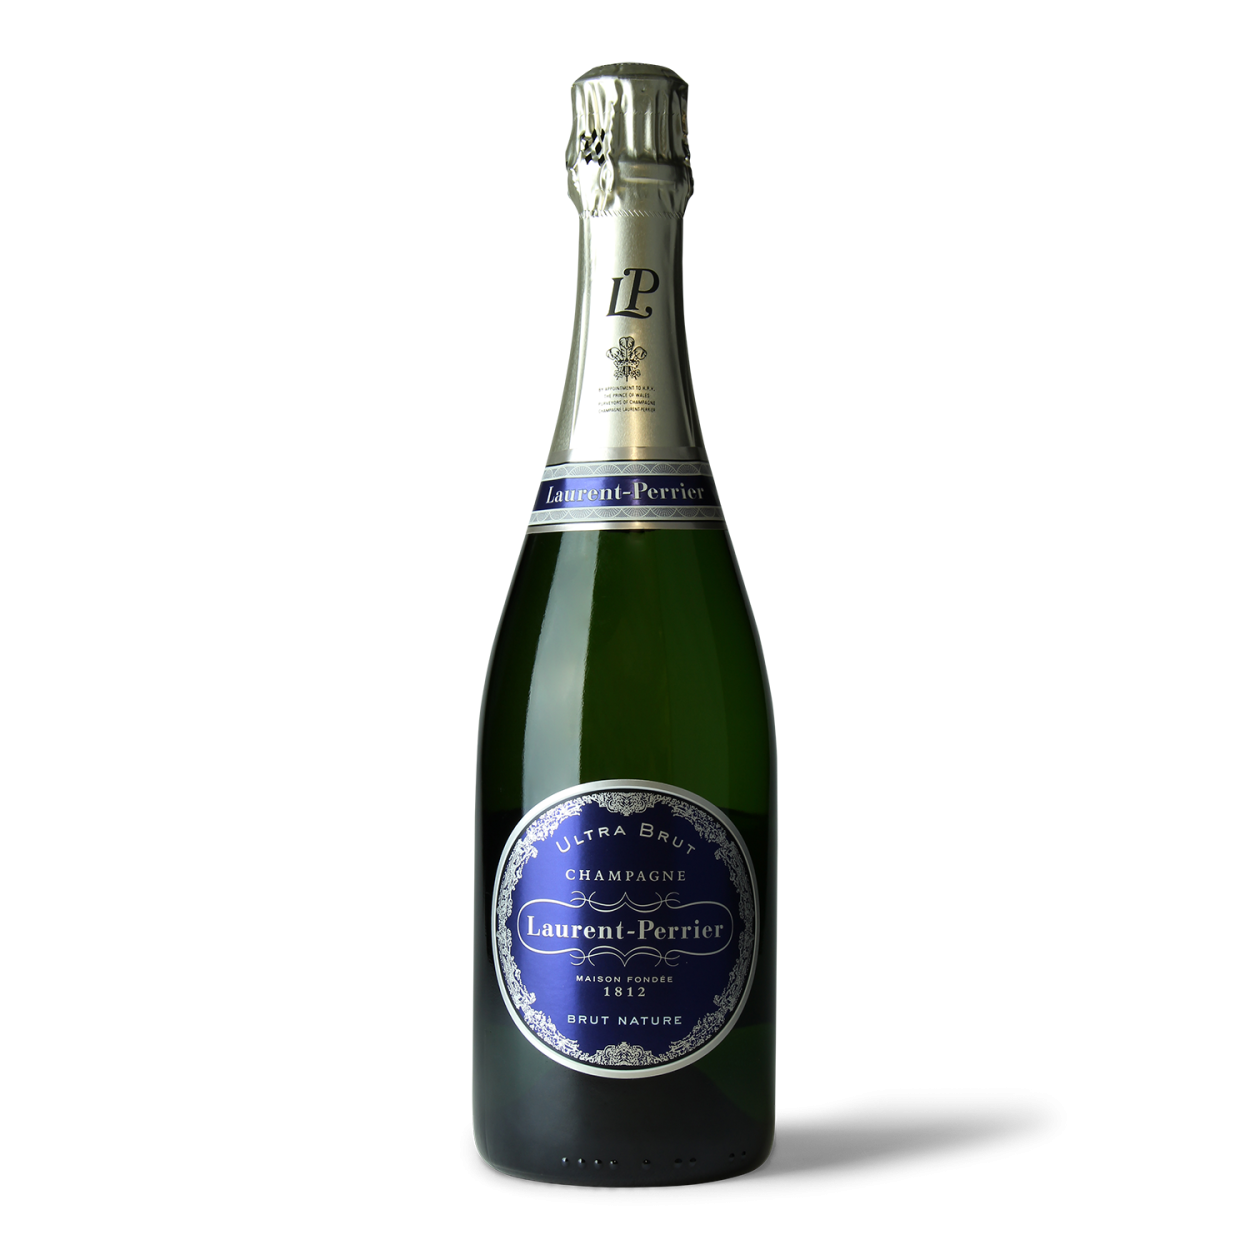 Шампанское солнечный. Шампанское Laurent-Perrier Ultra Brut 0,75 л. Солнечная Долина шампанское. Ведро для шампанского Laurent Perrier. Laurent Perrier часы.